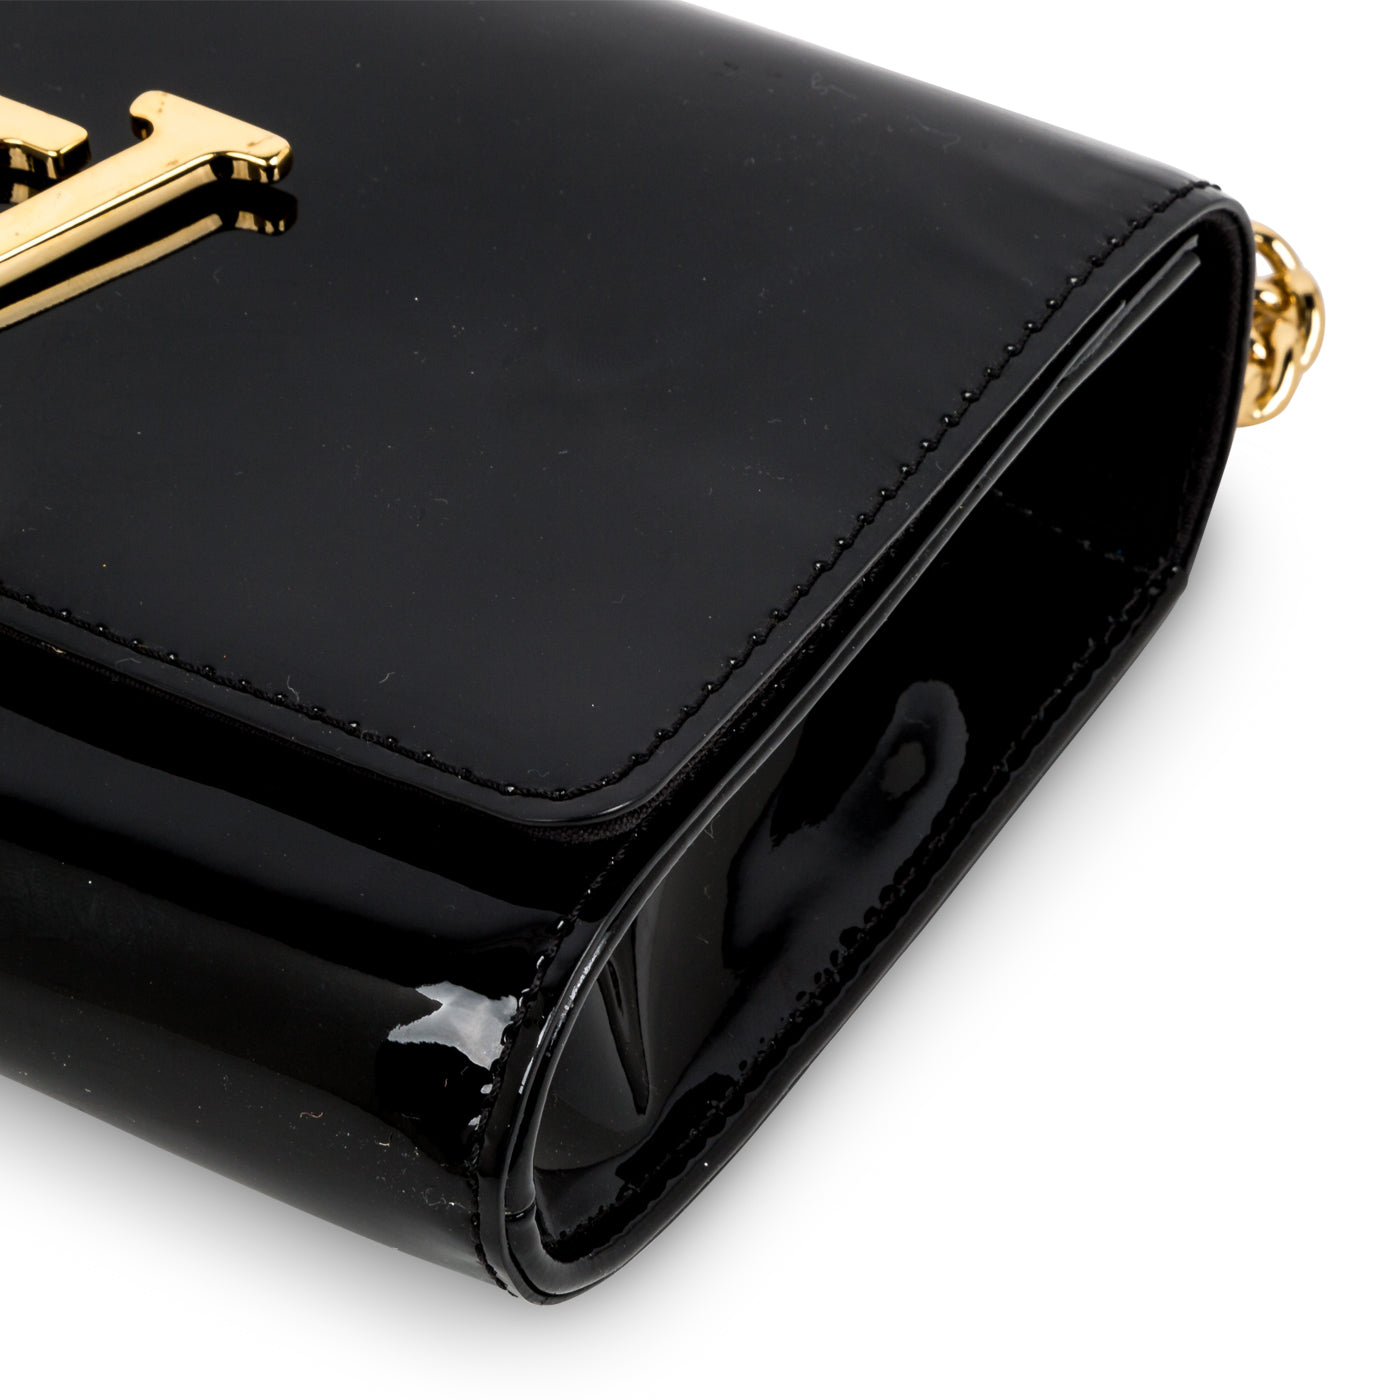 LOUISVUITTON.COM - Louis Vuitton Chain Louise (LG) AUTRES CUIRS Handbags